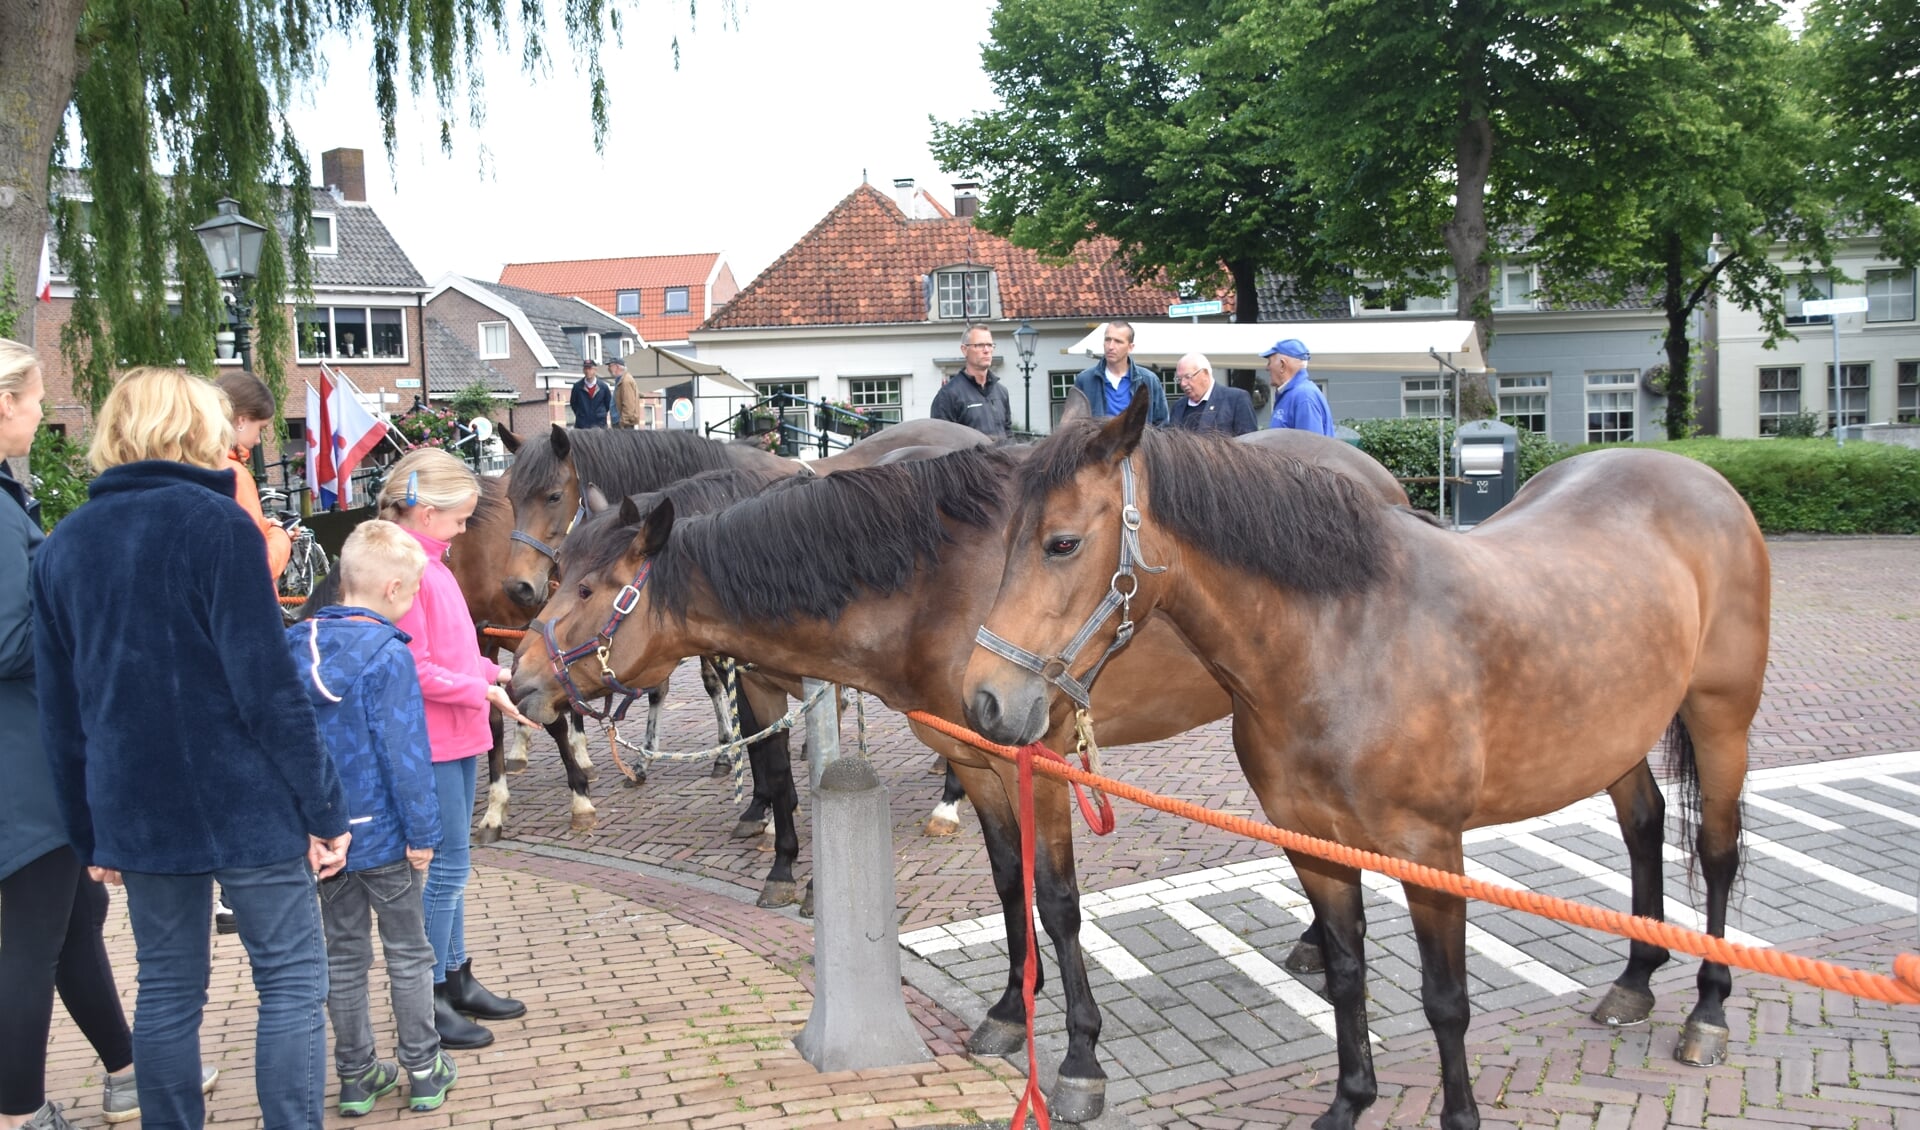 Vandaag staan de paarden centraal tijdens de Paardenmarkt. Maar er is meer te doen zoals de braderie, kermis en het ringsteken.